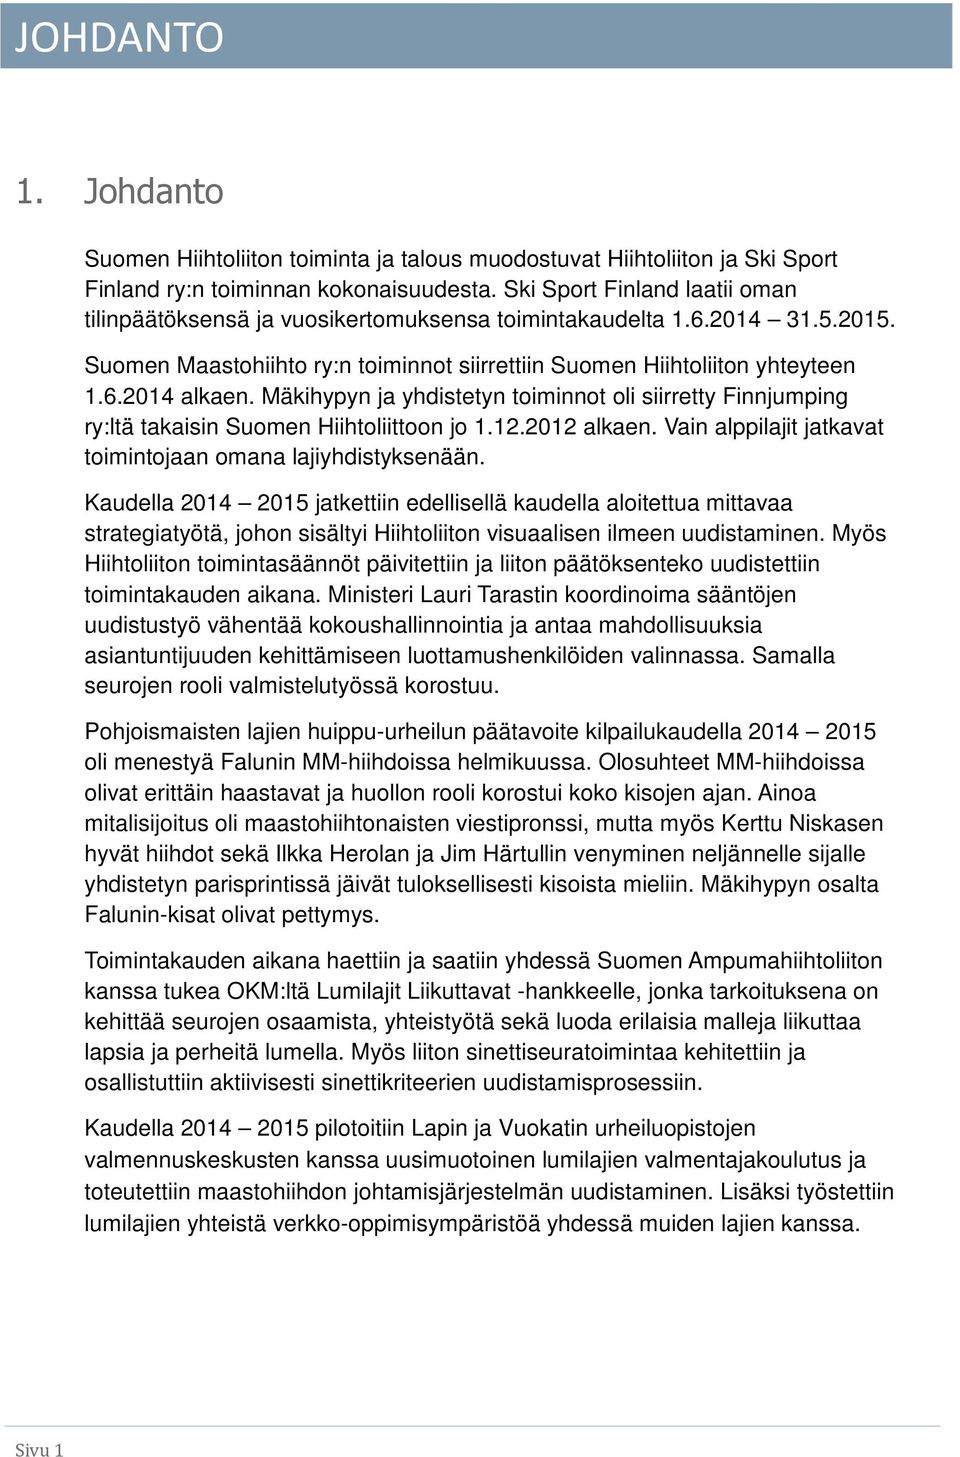 Mäkihypyn ja yhdistetyn toiminnot oli siirretty Finnjumping ry:ltä takaisin Suomen Hiihtoliittoon jo 1.12.2012 alkaen. Vain alppilajit jatkavat toimintojaan omana lajiyhdistyksenään.